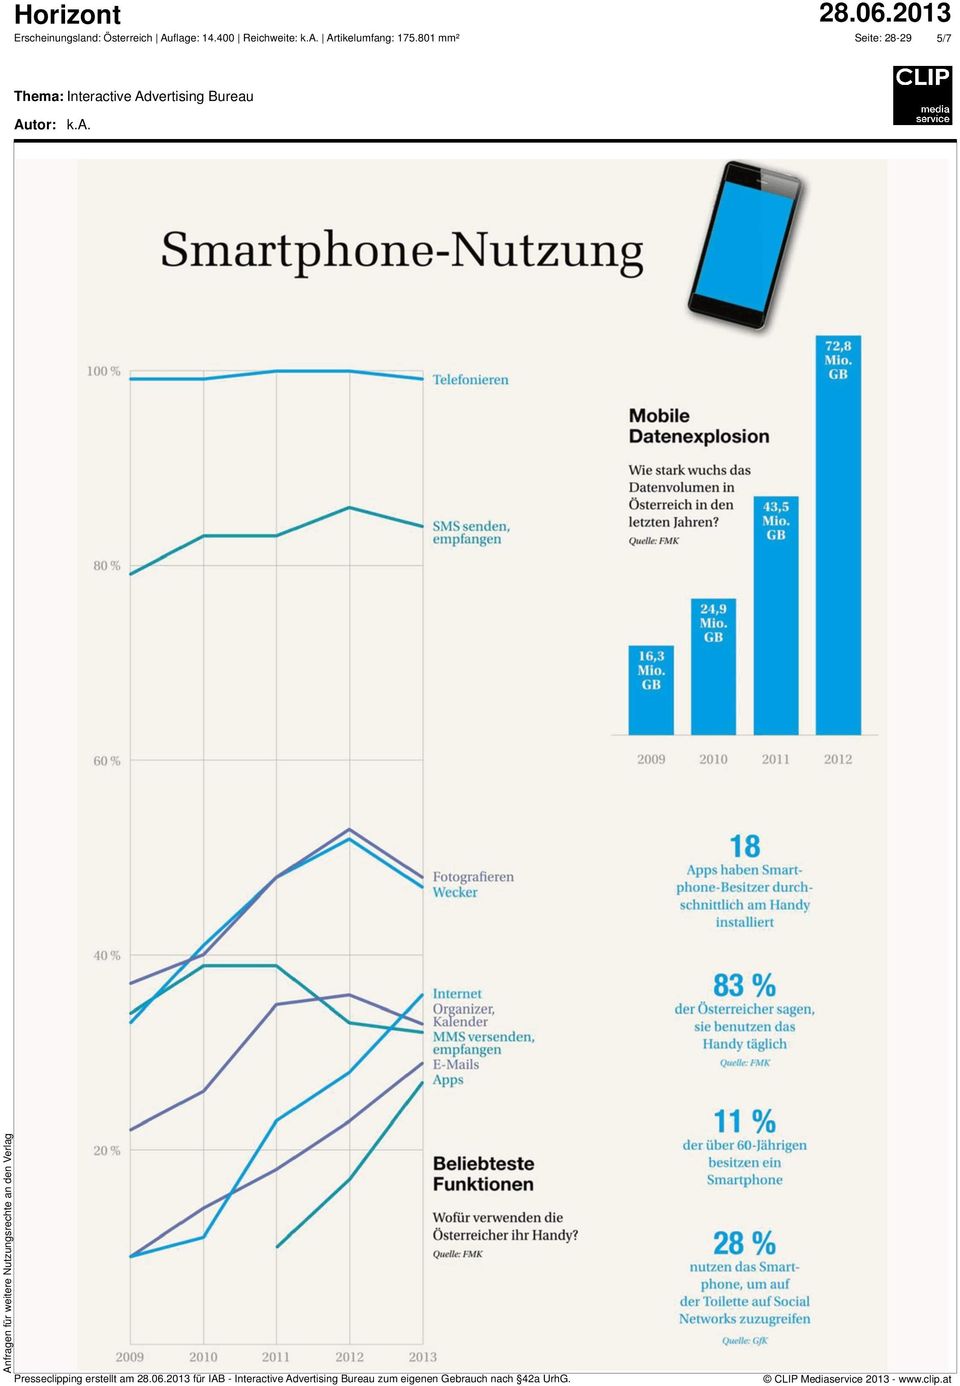 2013 Internet Organizer, Kalender MMS versenden, empfangen E-Mails Apps Beliebteste Funktionen Wofür die Österreicher ihr Handy?